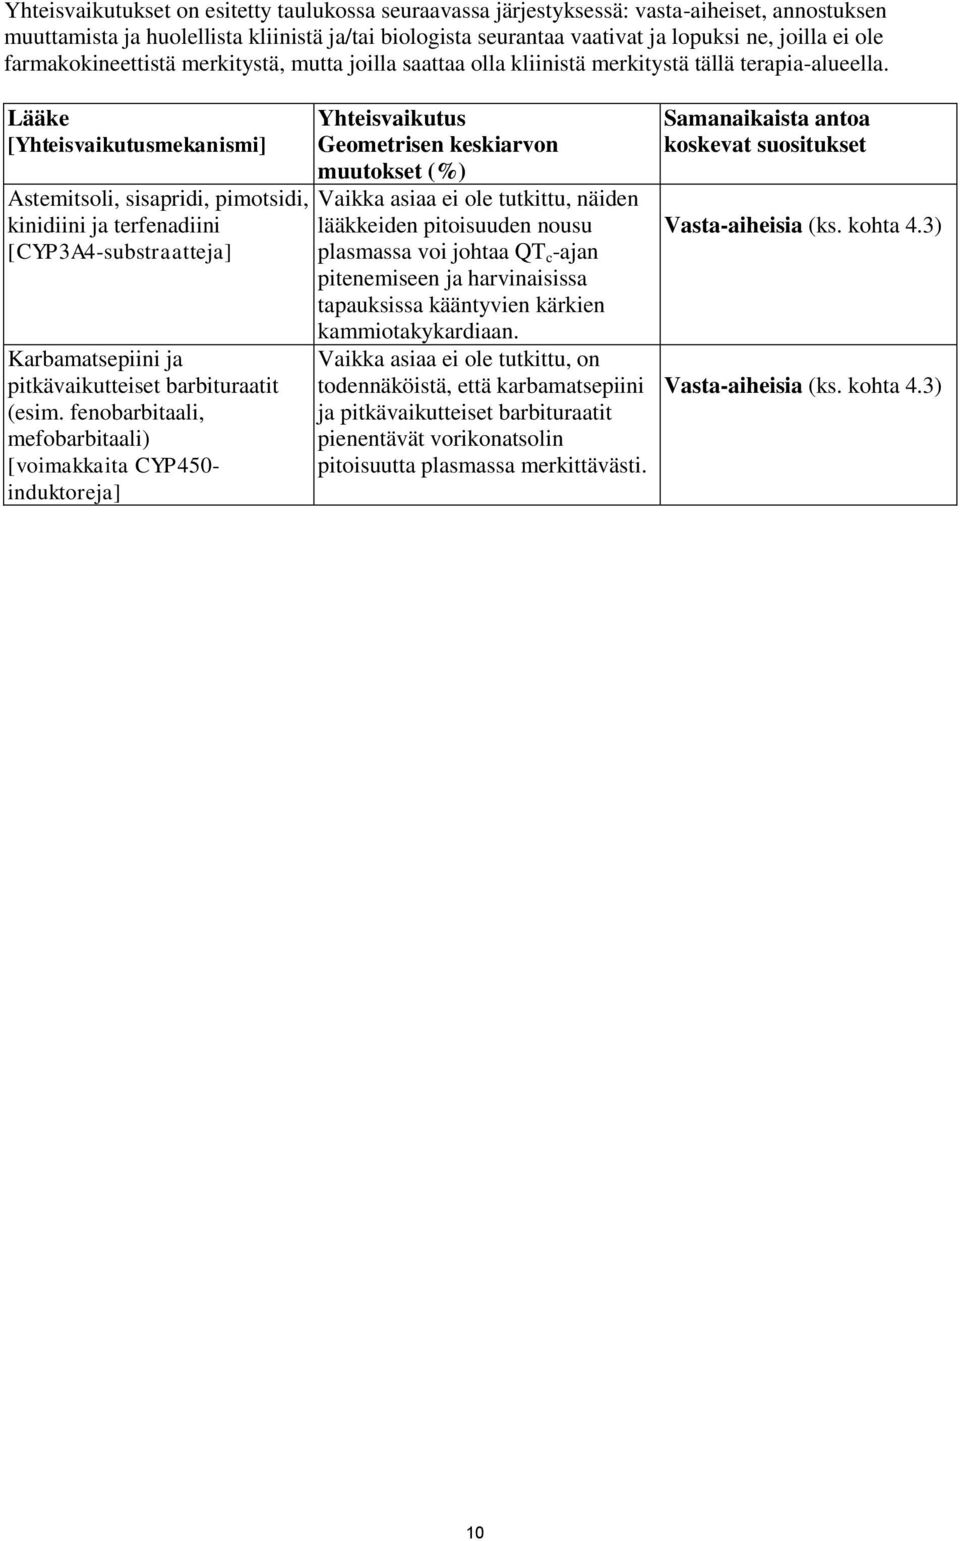 Lääke [Yhteisvaikutusmekanismi] Astemitsoli, sisapridi, pimotsidi, kinidiini ja terfenadiini [CYP3A4-substraatteja] Karbamatsepiini ja pitkävaikutteiset barbituraatit (esim.